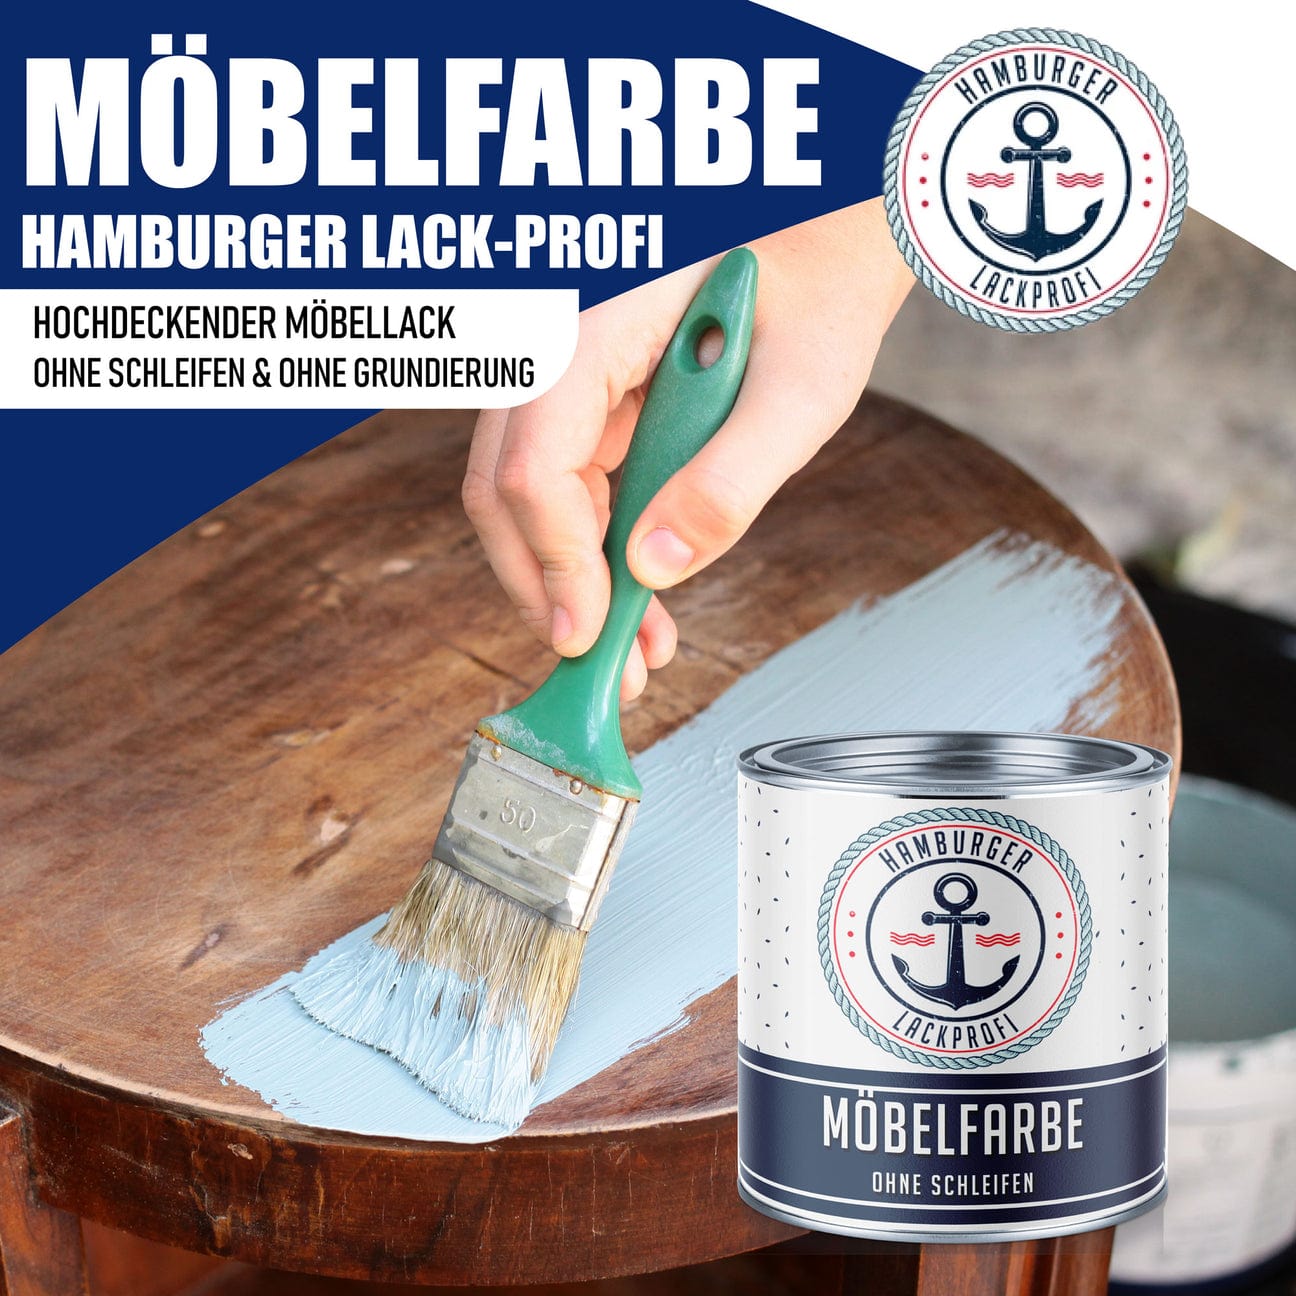 Hamburger Lack-Profi Möbelfarbe ohne Schleifen RAL 6034 Pastelltürkis - Möbellack Hamburger Lack-Profi